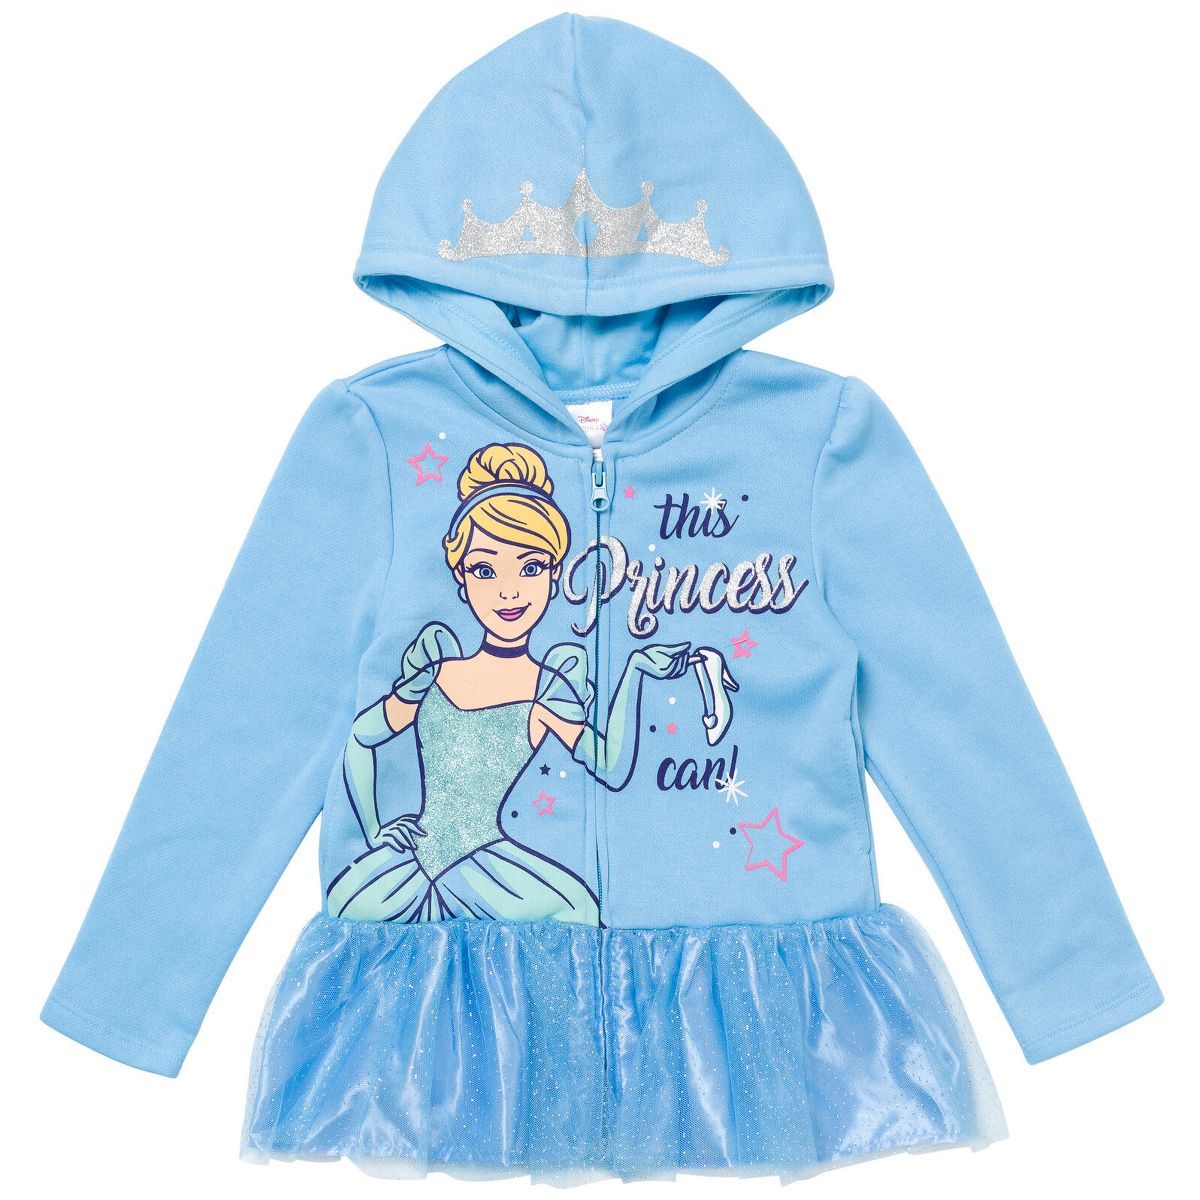 Shop all Disney Princess | Target